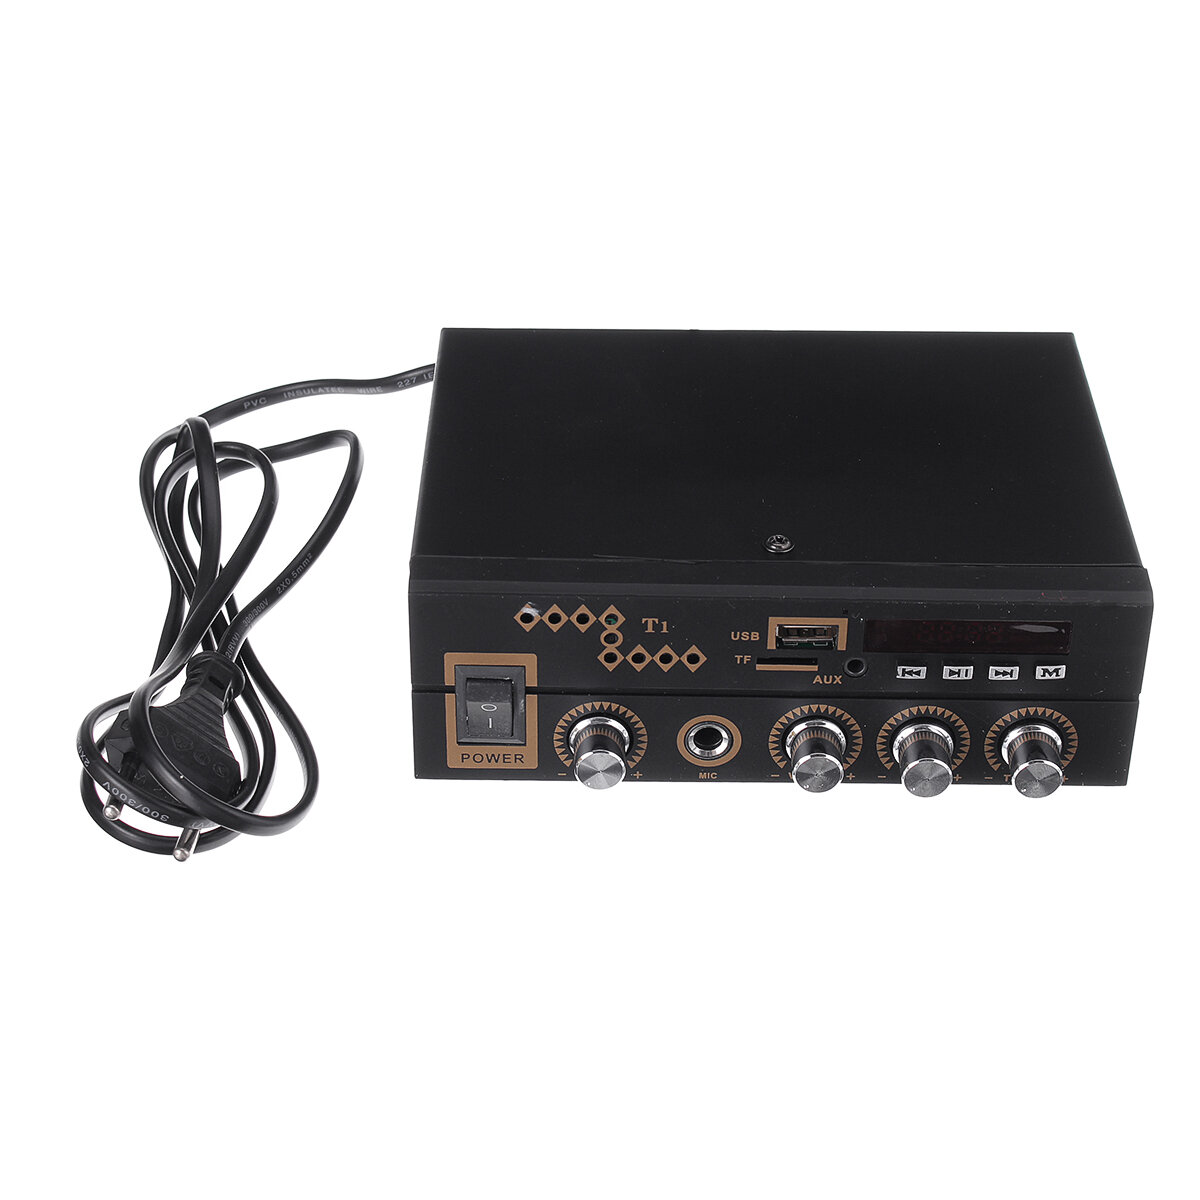 

Kinter T1 AC 90-220V Bluetooth Stereo Audio Усилитель Home Усилитель Дистанционное Управление Поддержка FM USB Микрофон